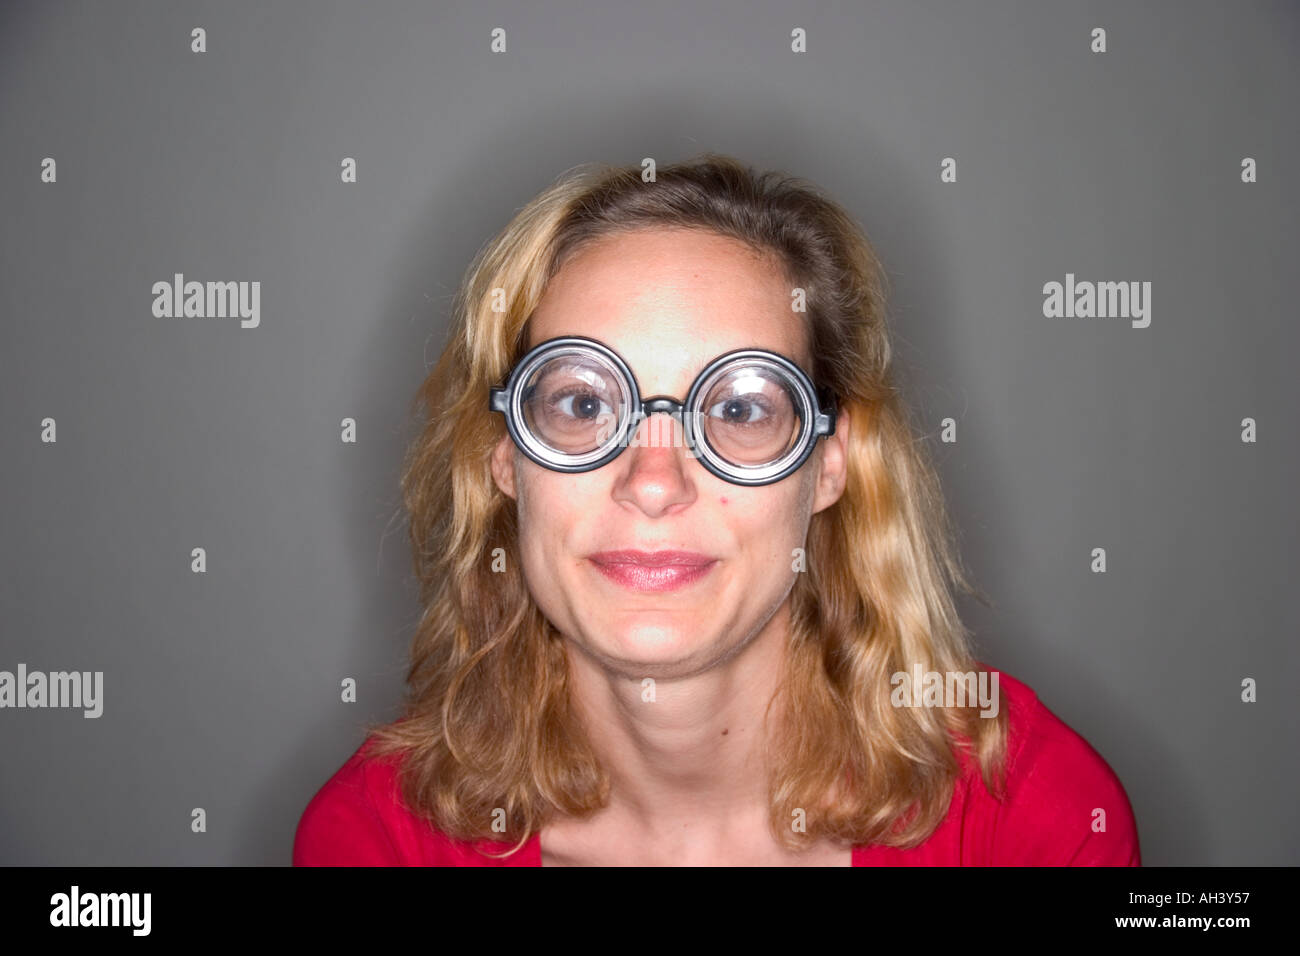 Yong blond woman wearing toy lunettes avec verres épais Parution Modèle  Photo Stock - Alamy